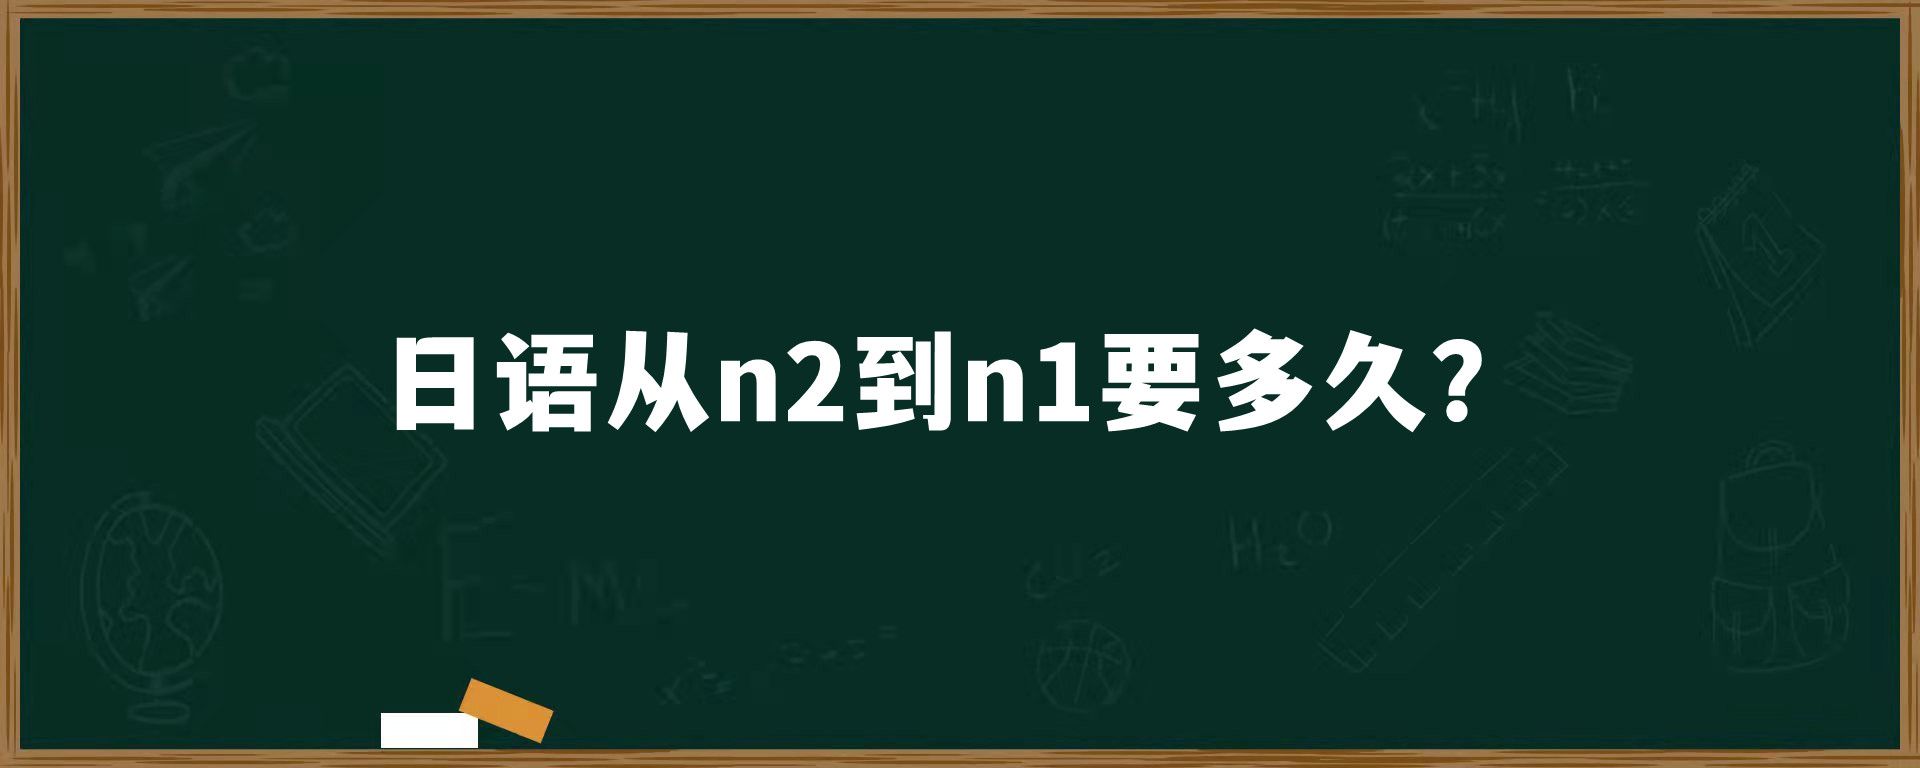 日语从n2到n1要多久？